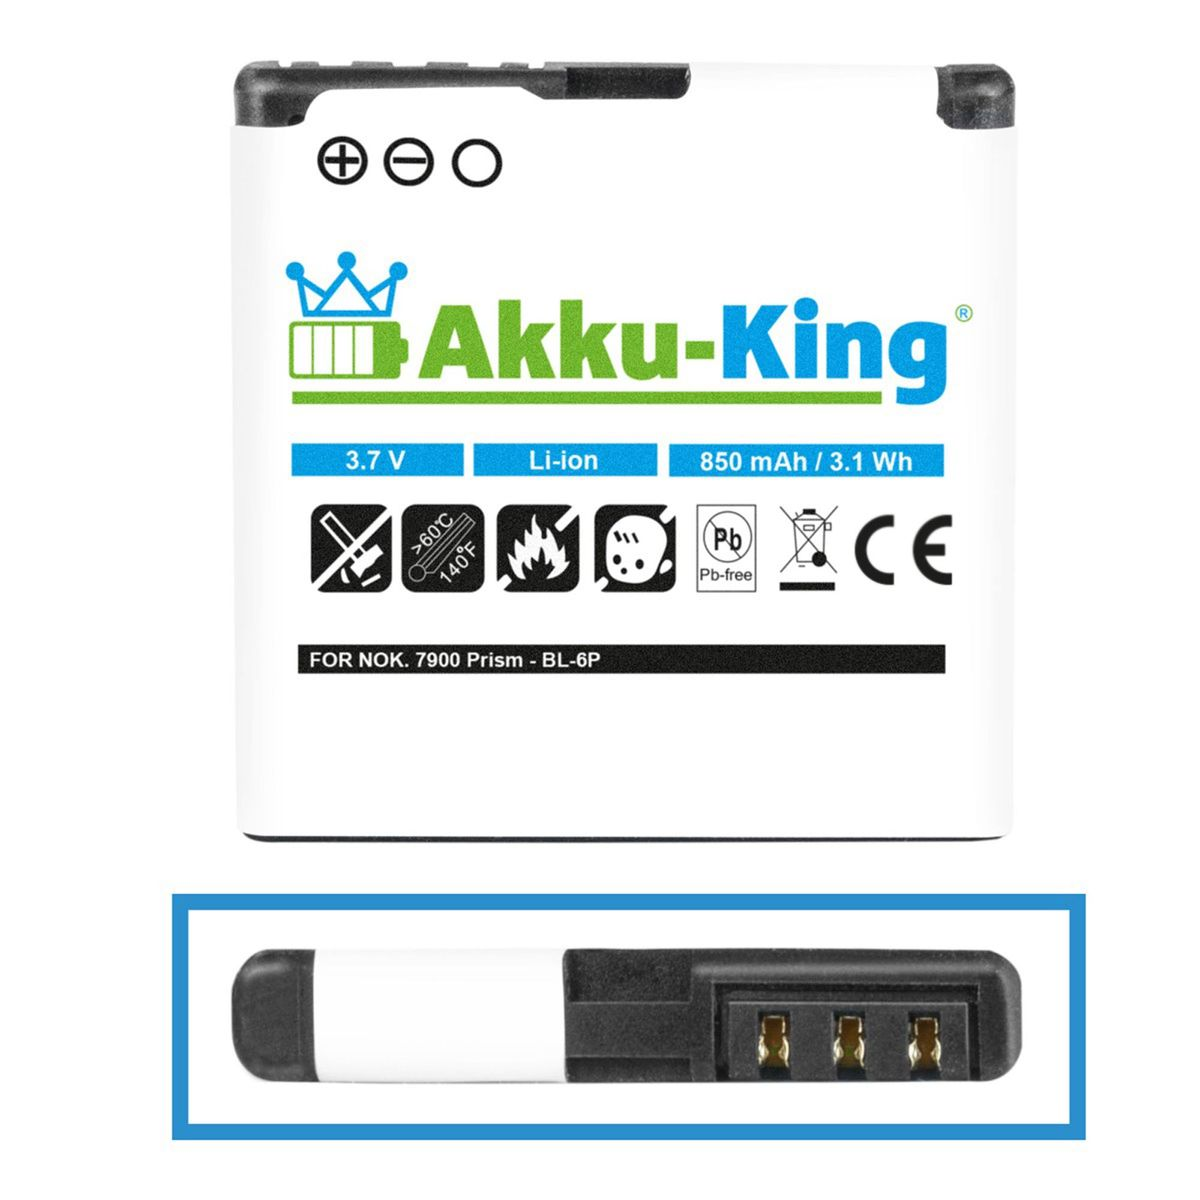 AKKU-KING Akku kompatibel mit 850mAh 3.7 BP-6P Li-Ion Nokia Volt, Handy-Akku